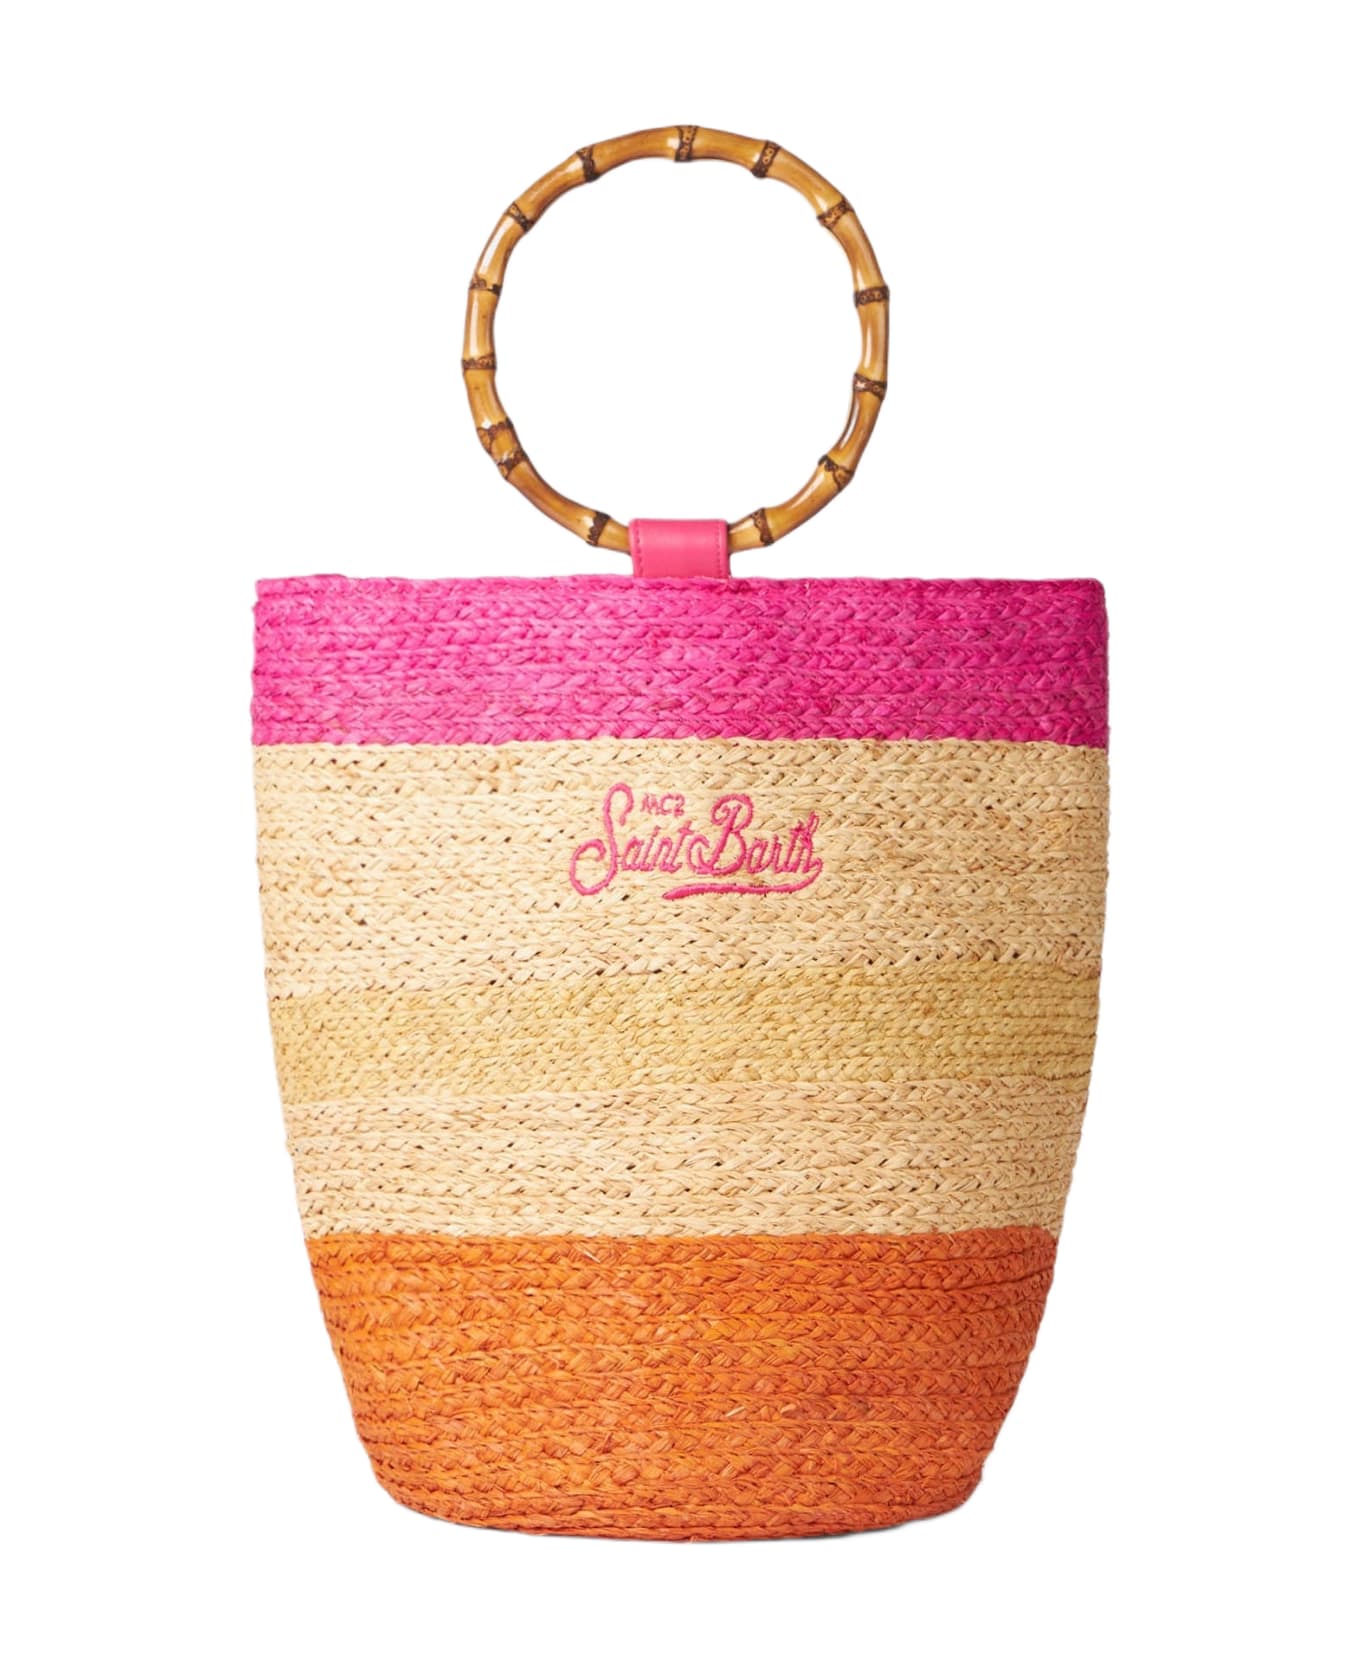 MC2 Saint Barth Raffia Multicolor Bucket Bag With Bamboo Handles - MULTICOLOR